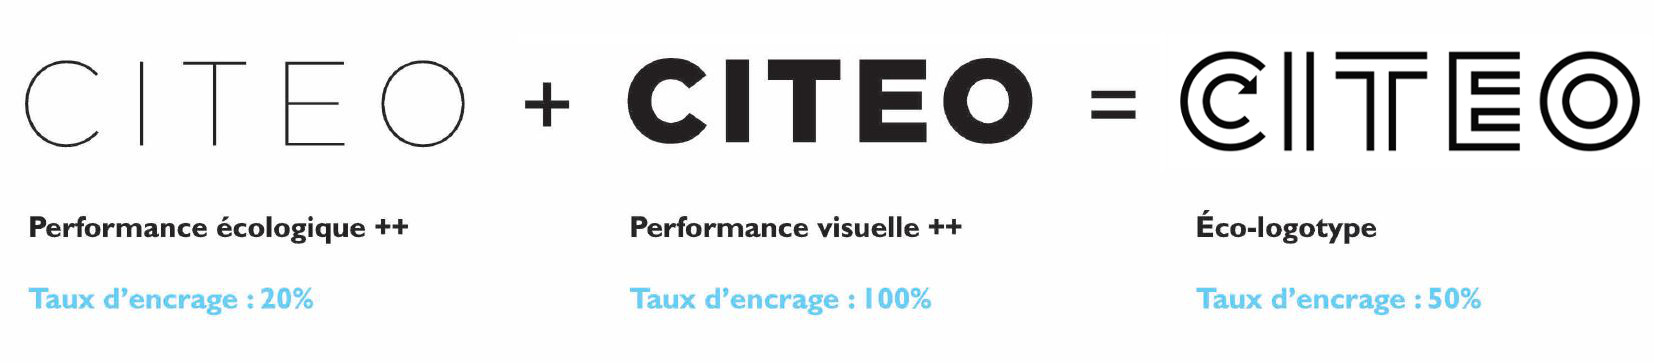 Citeo est une marque éco-conçue